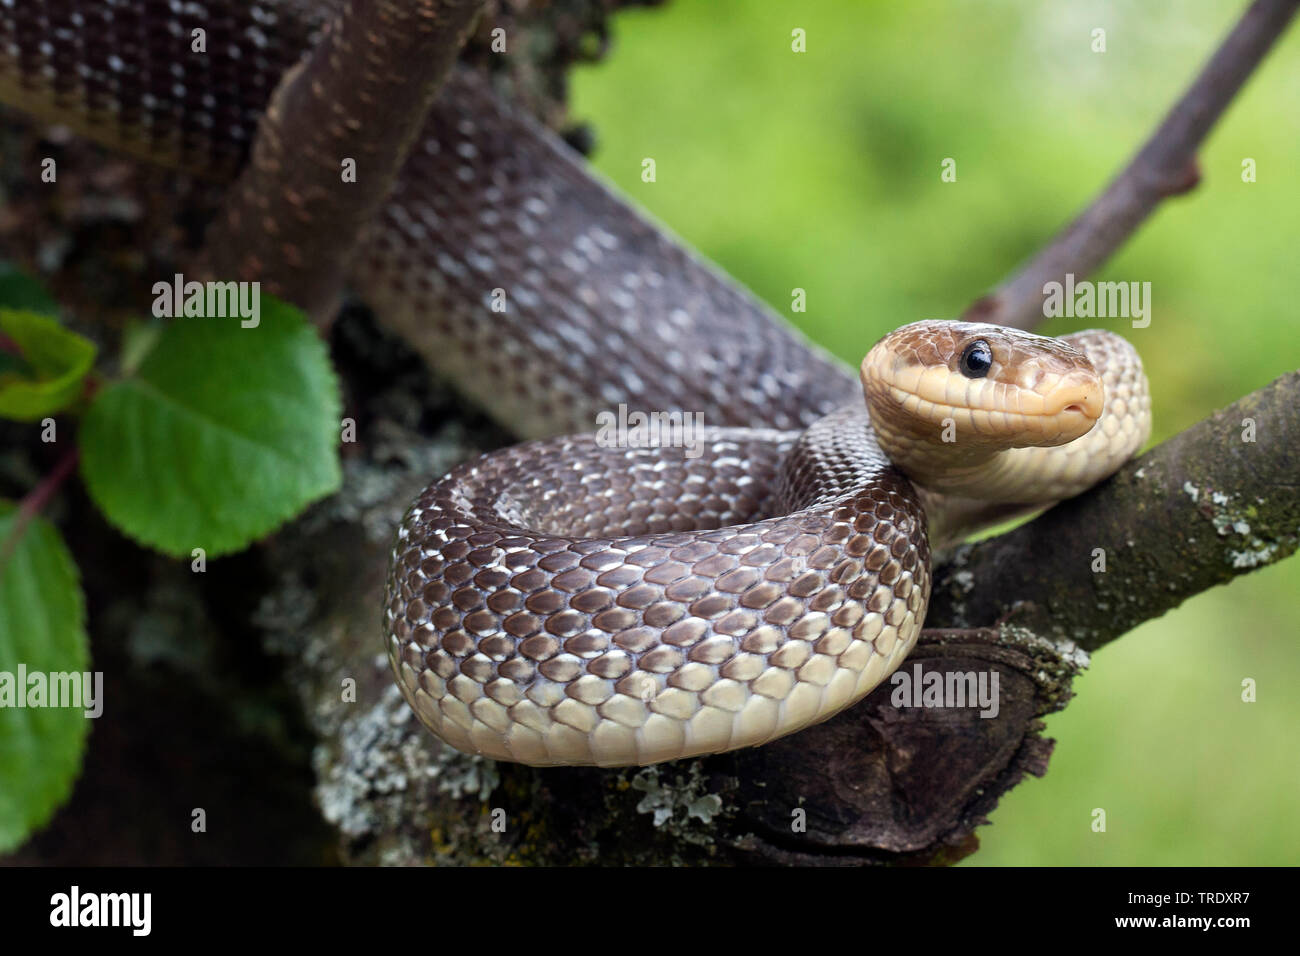 Aesculapian snake (Elaphe longissima, Zamenis longissimus), on a tree, Germany Stock Photo